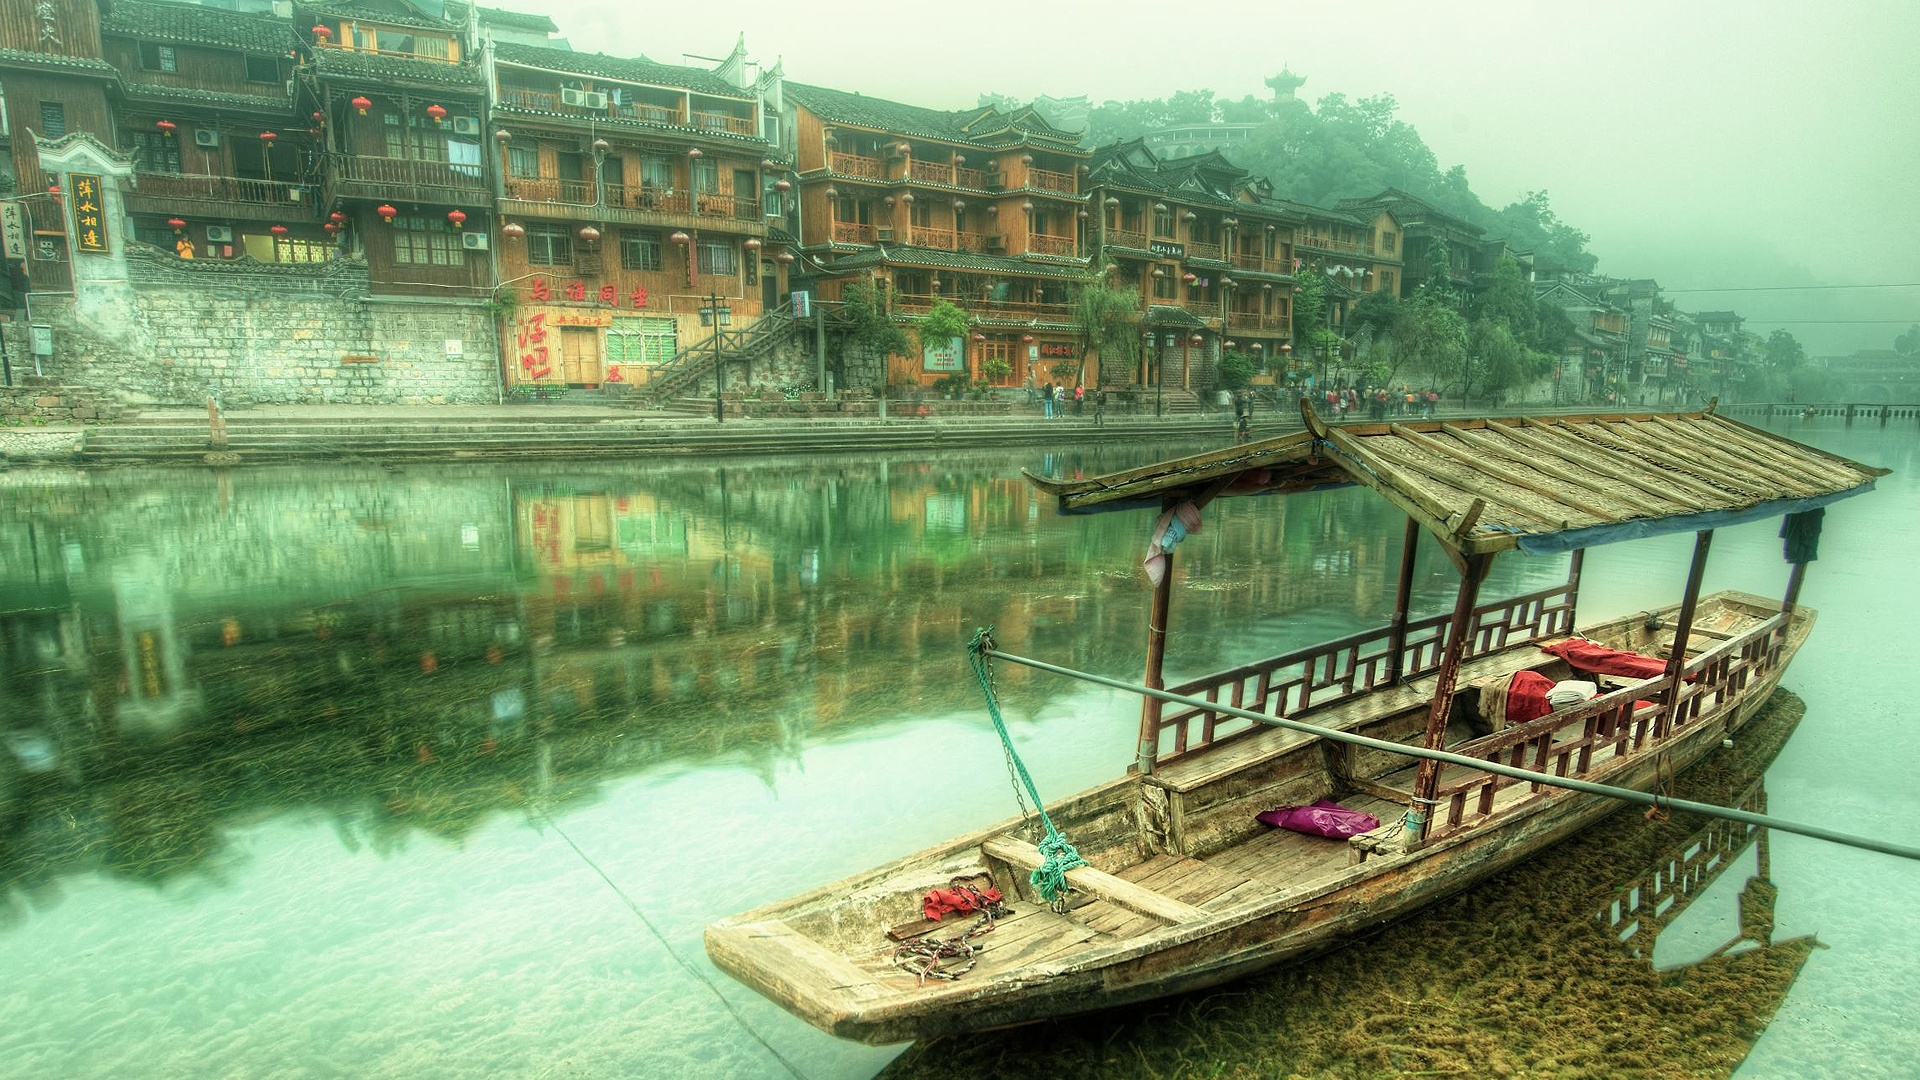 vehicles, canoe, feng huang china 2160p